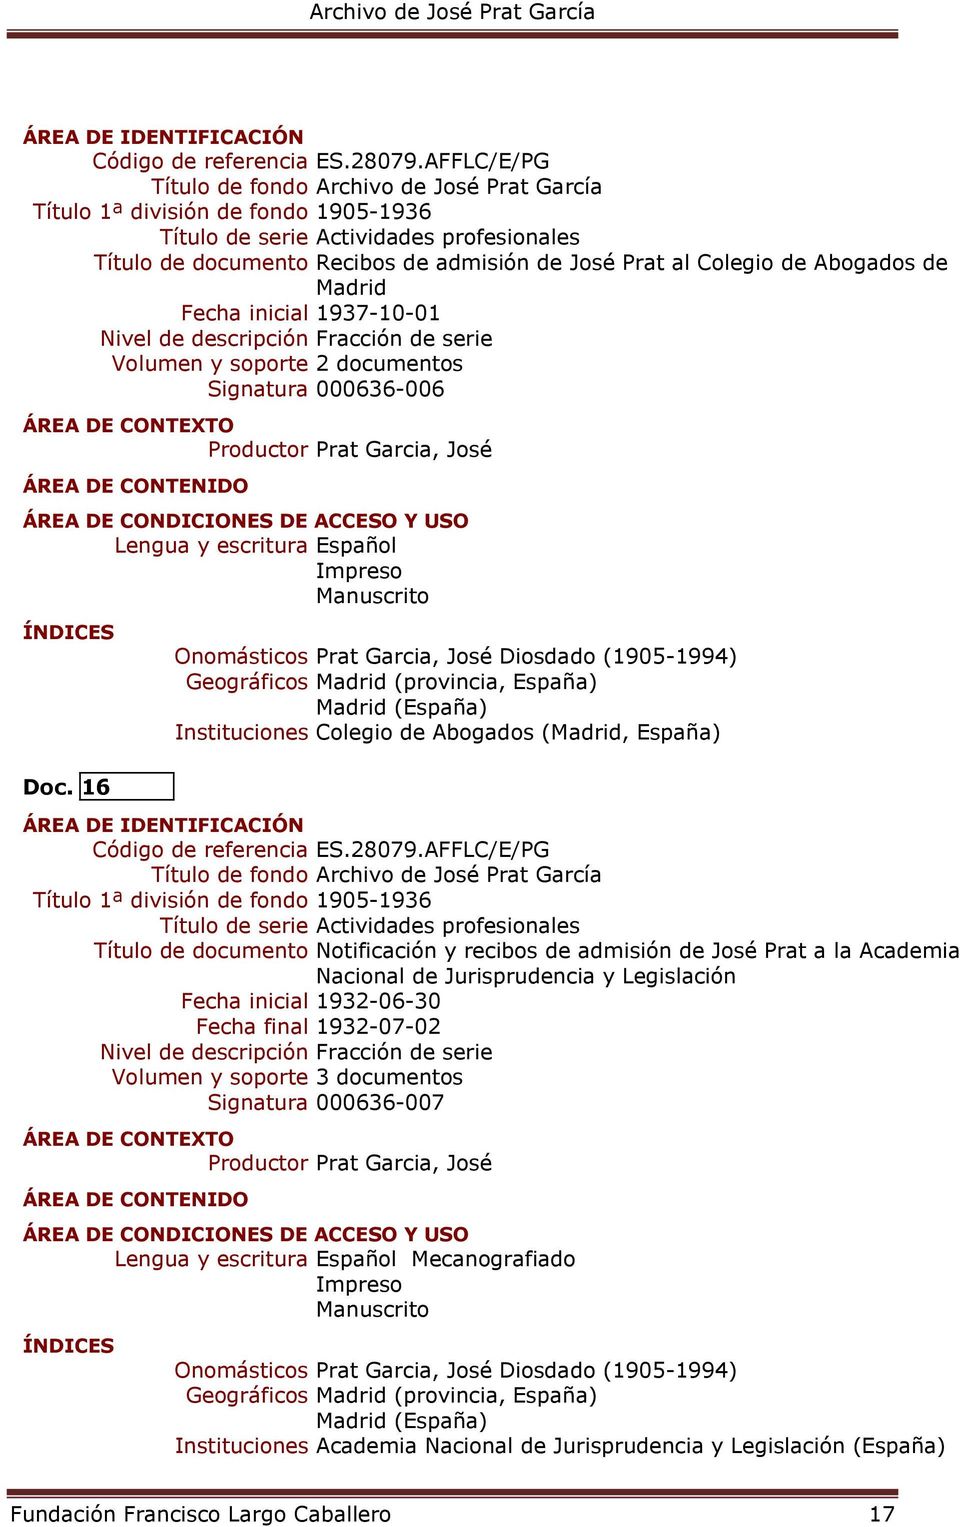 16 Título 1ª división de fondo 1905-1936 Título de serie Actividades profesionales Título de documento Notificación y recibos de admisión de José Prat a la Academia Nacional de Jurisprudencia y